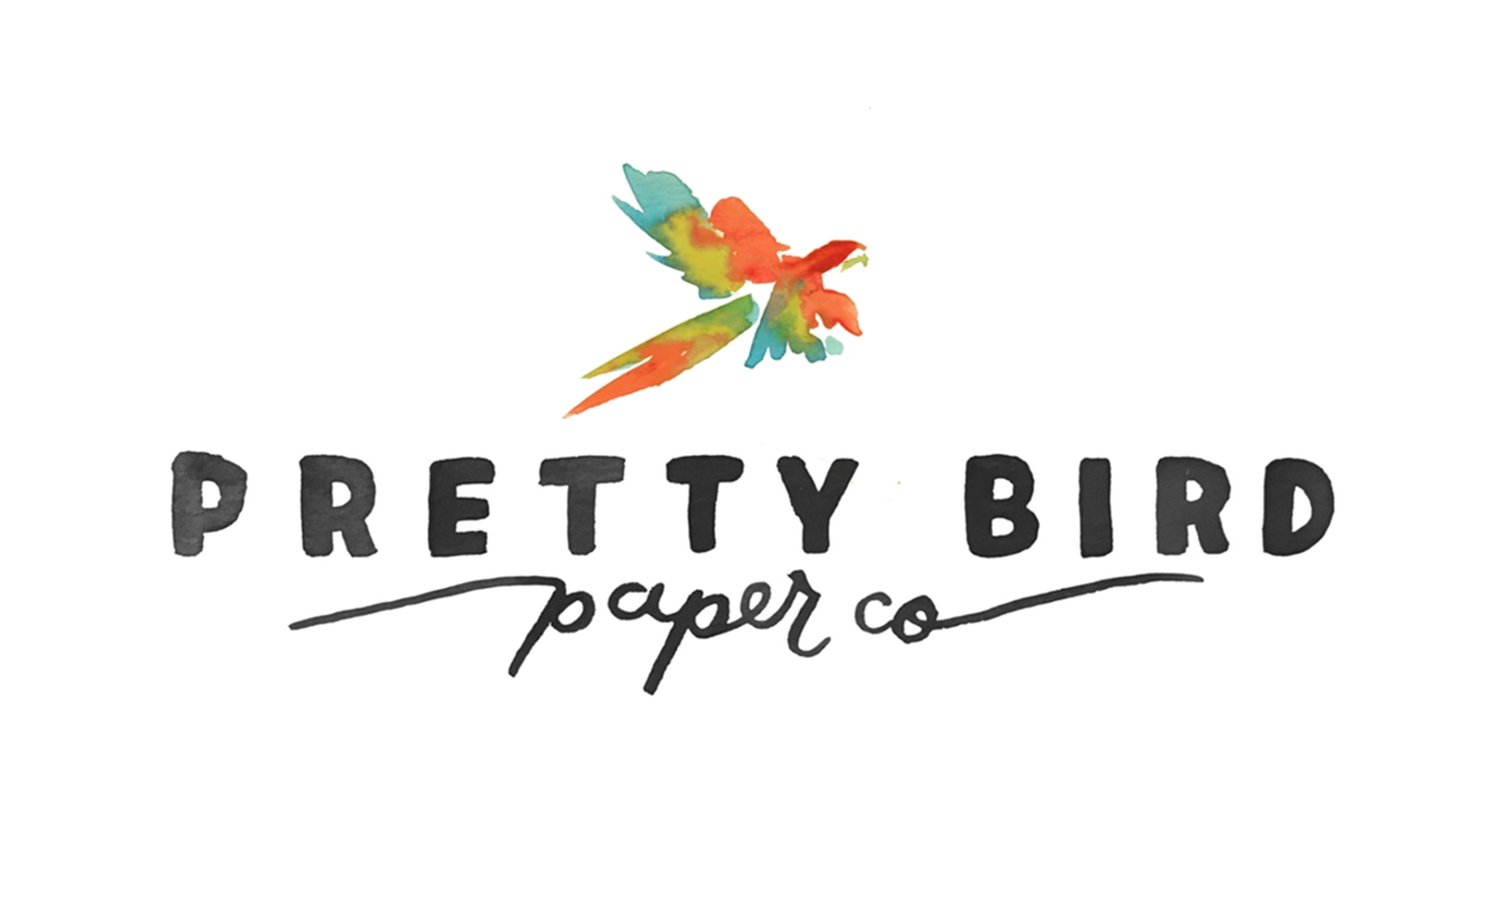 pretty bird paper co.